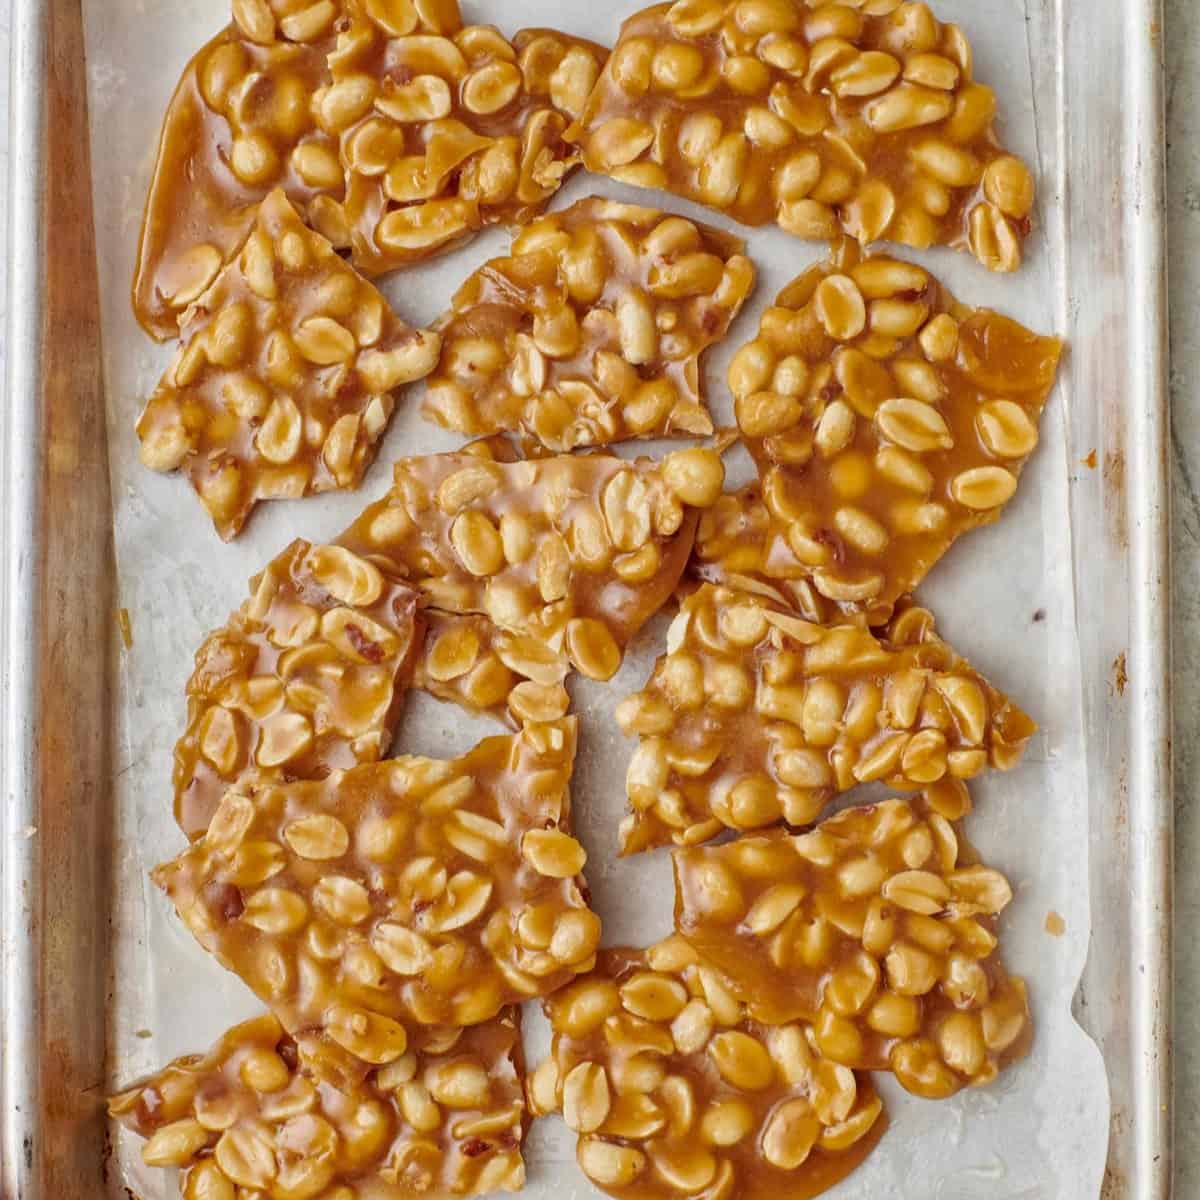 Square image of peanut brittle pieces.